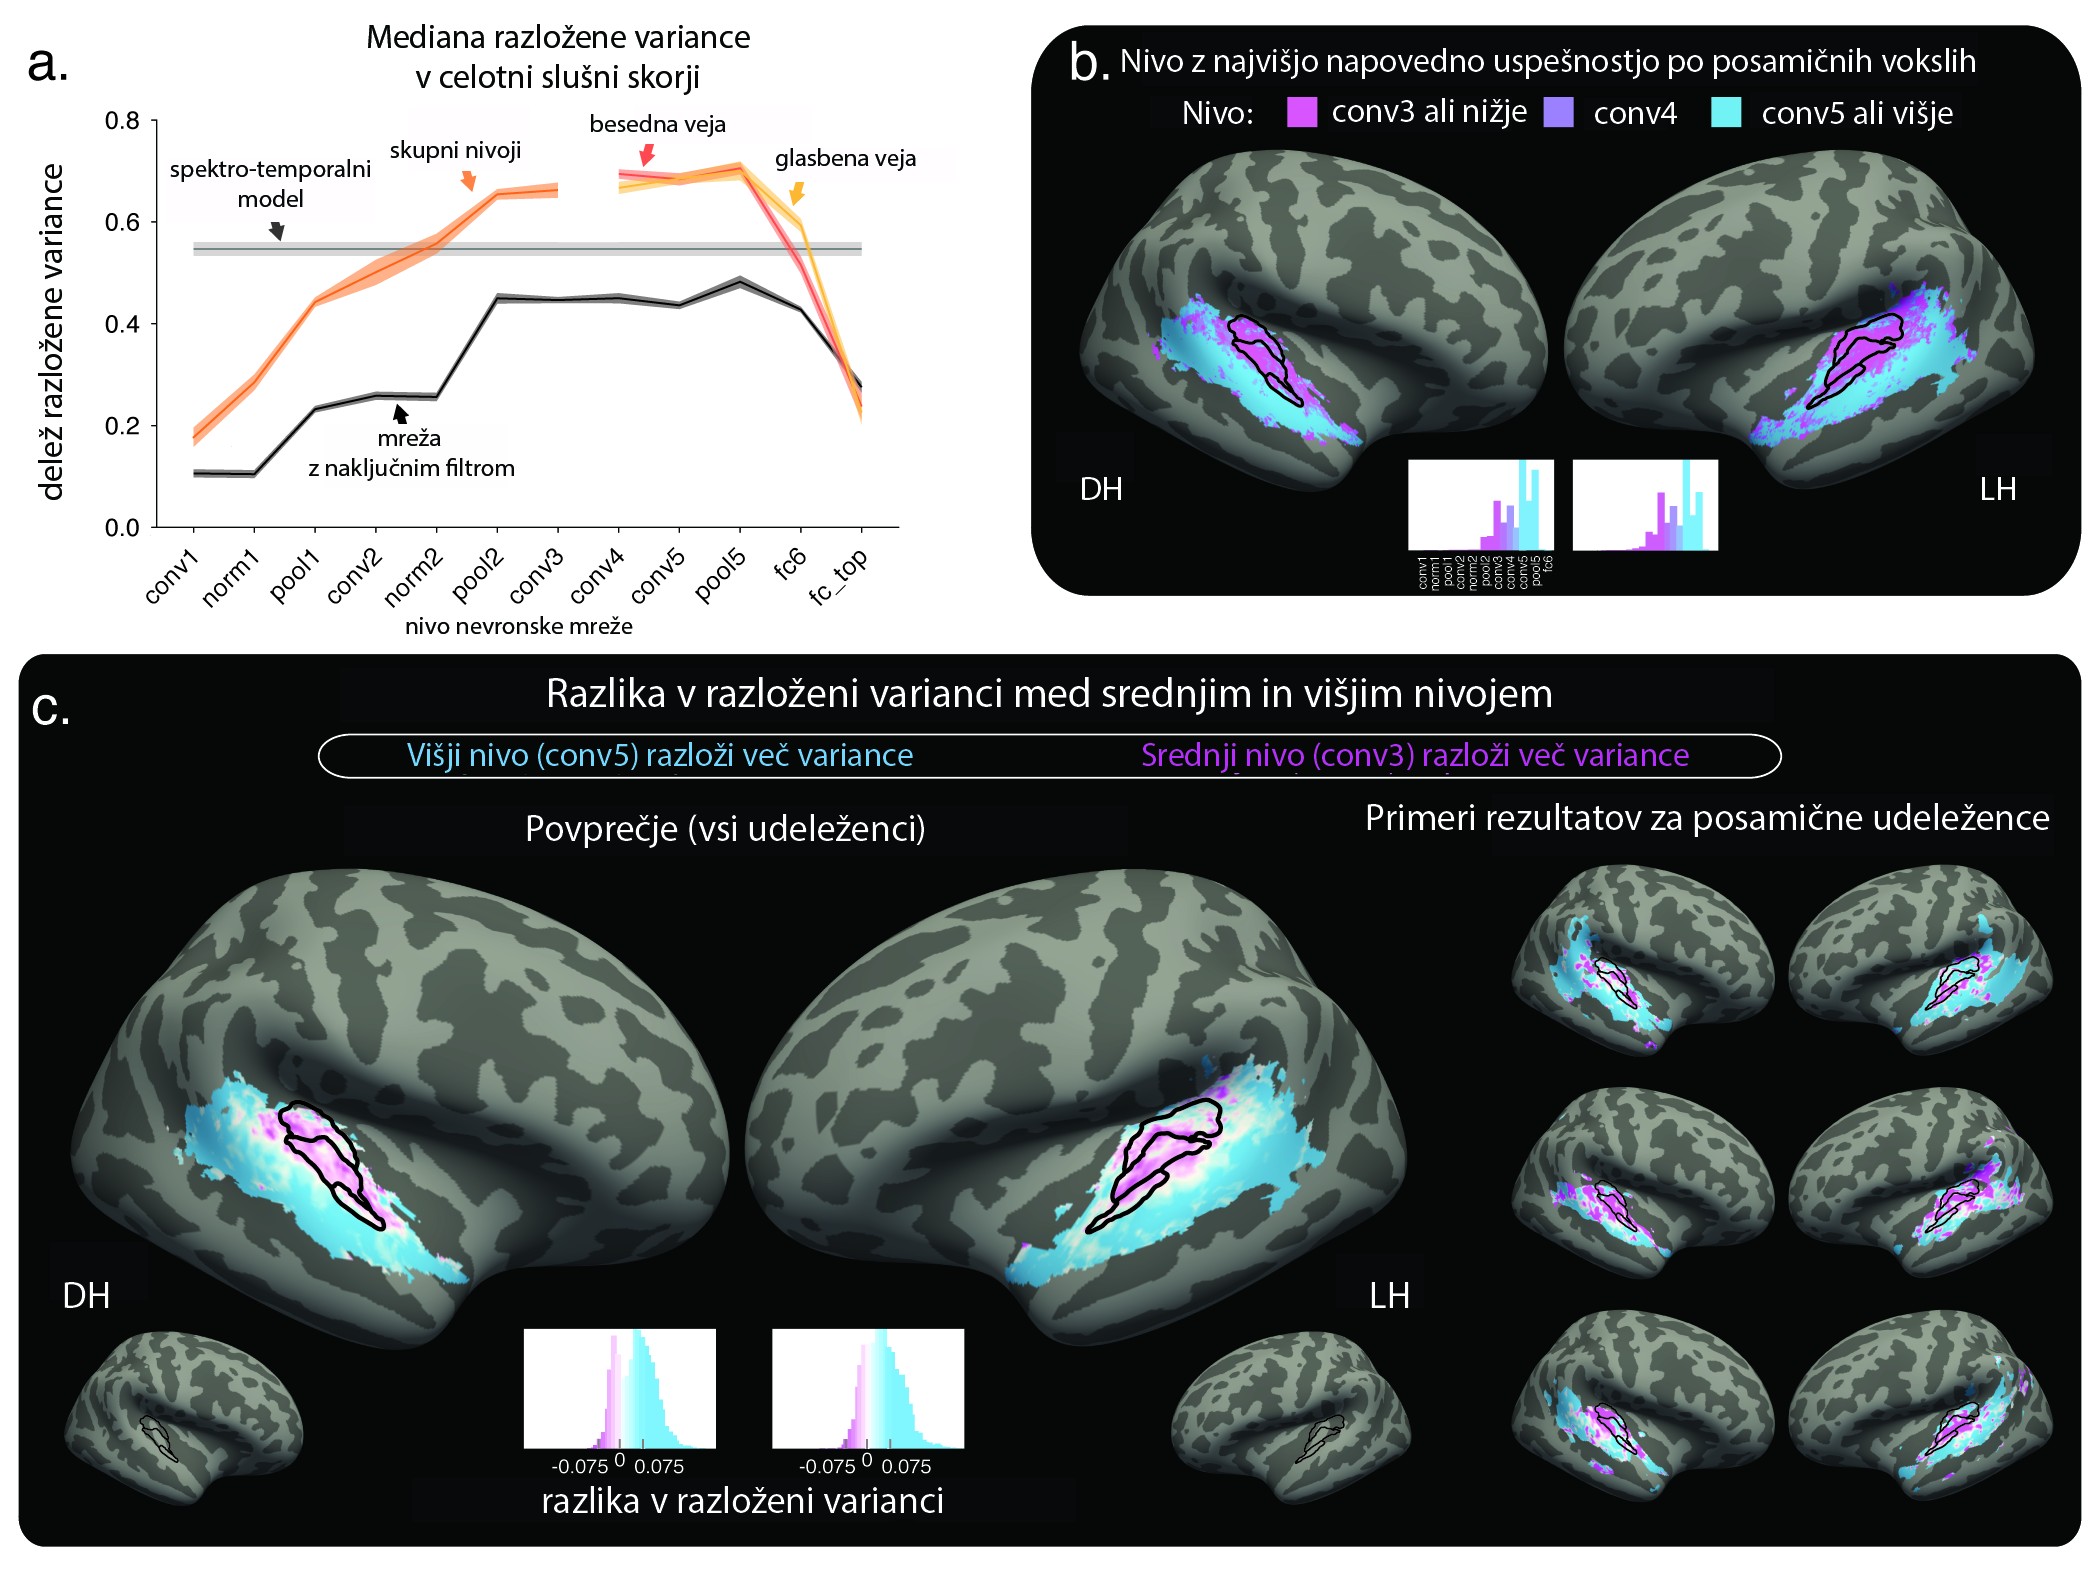  Slika 3: A) Delež razložene variance fMRI-signala na podlagi aktivnosti nevronov v različnih nivojih nevronske mreže. B) Prostorska porazdeljenost uspešnosti posamičnih nivojev nevronske mreže. Deli slušne skorje so razvrščeni v dve skupini glede na to, ali so v posamičnem vokslu boljši napovedni dejavnik možganske aktivnosti srednji (vijolično) ali višji nivoji (modro). C) Podobno kot B, le da barve ne ponazarjajo nivojev, ampak dejansko razliko v razloženi varianci med višjim in srednjim nivojem. Pozitivna razlika (modro) pomeni, da več variance razloži višji nivoji in obratno. Povzeto po Kell in sodelavci <sup>14</sup>, slika 5 (avtorjeva različica, prevod: K.A.). DH – desna hemisfera. LH – leva hemisfera.